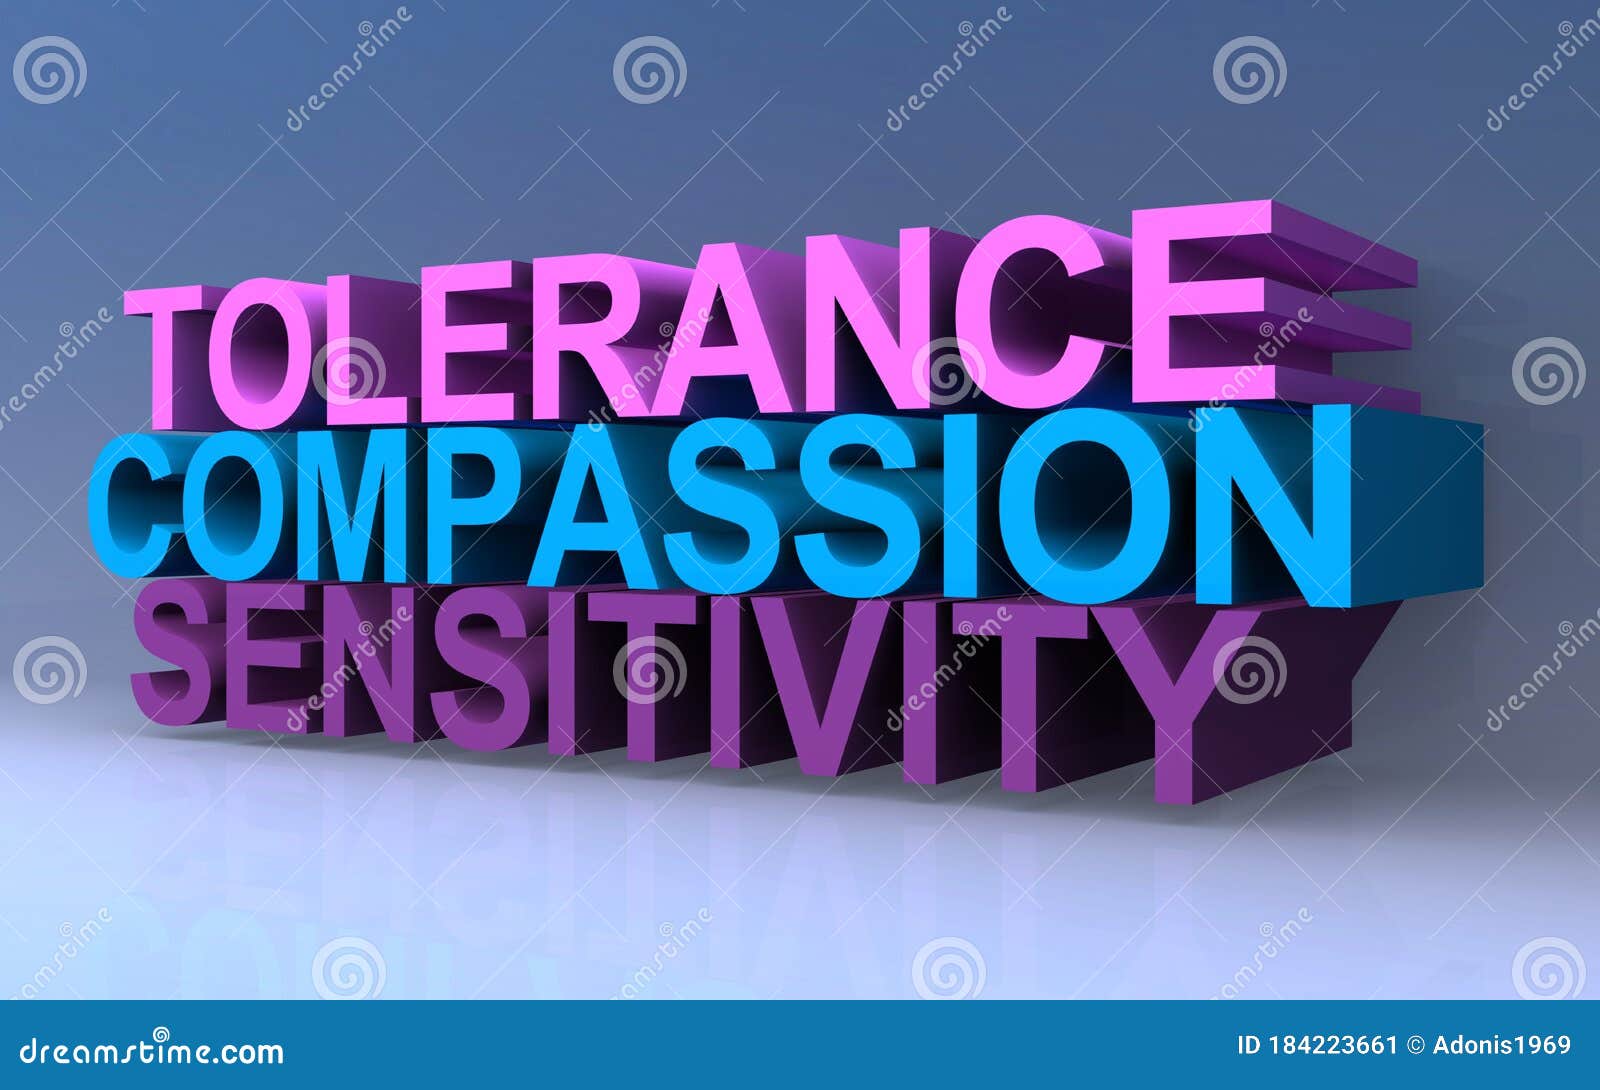 tolerance compassion sensitivity